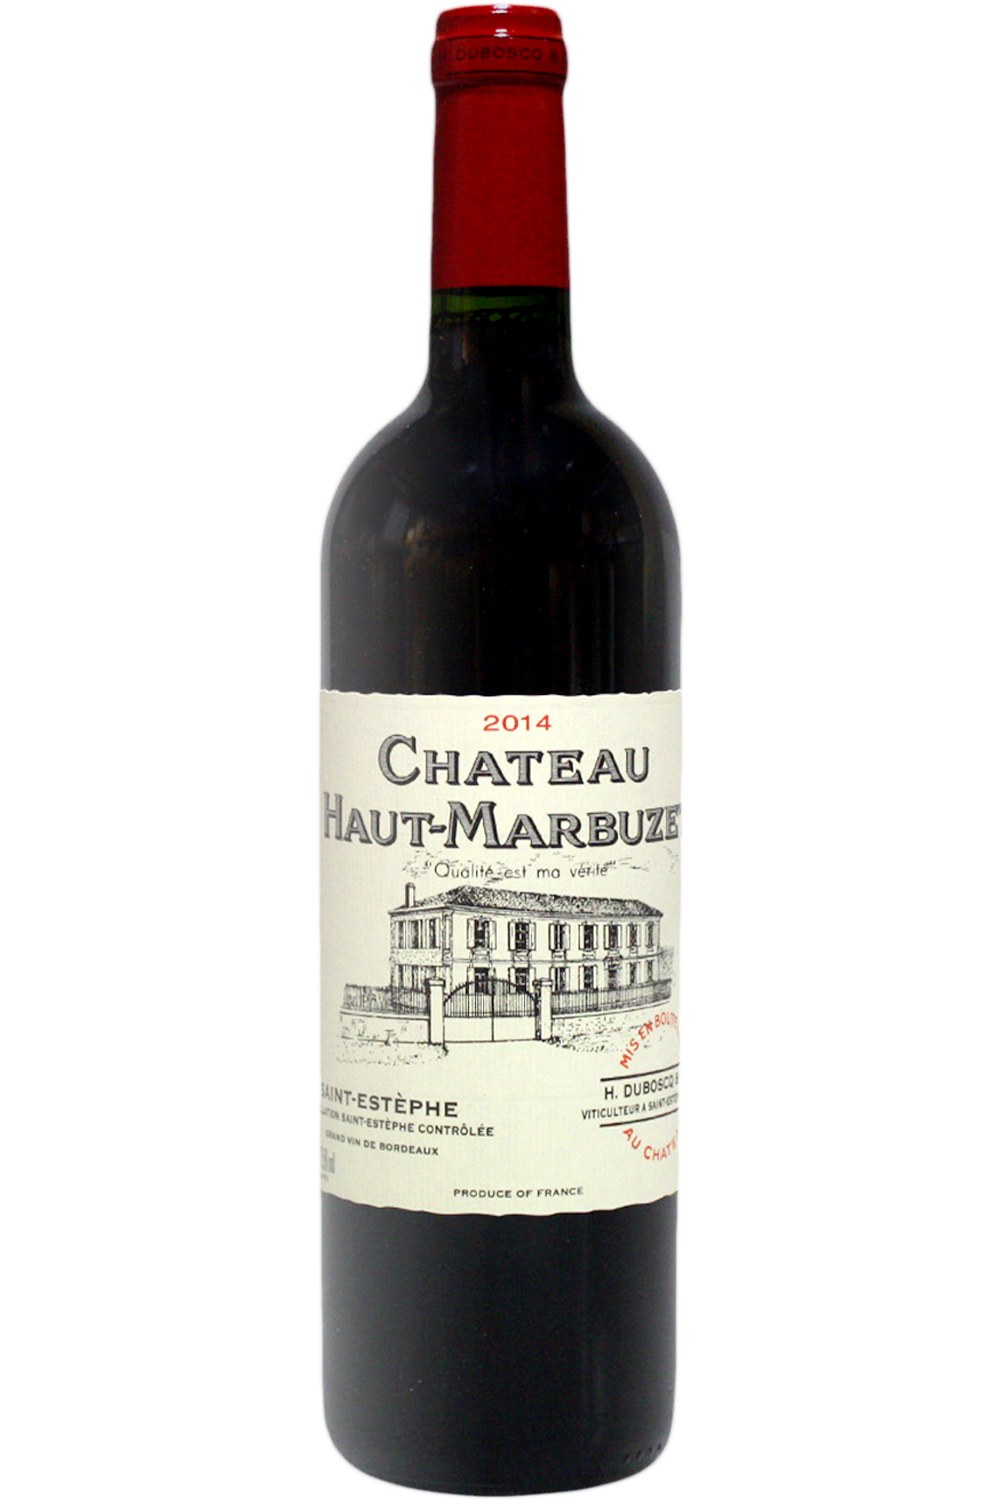 WineVins Chateau Haut Marbuzet 2014